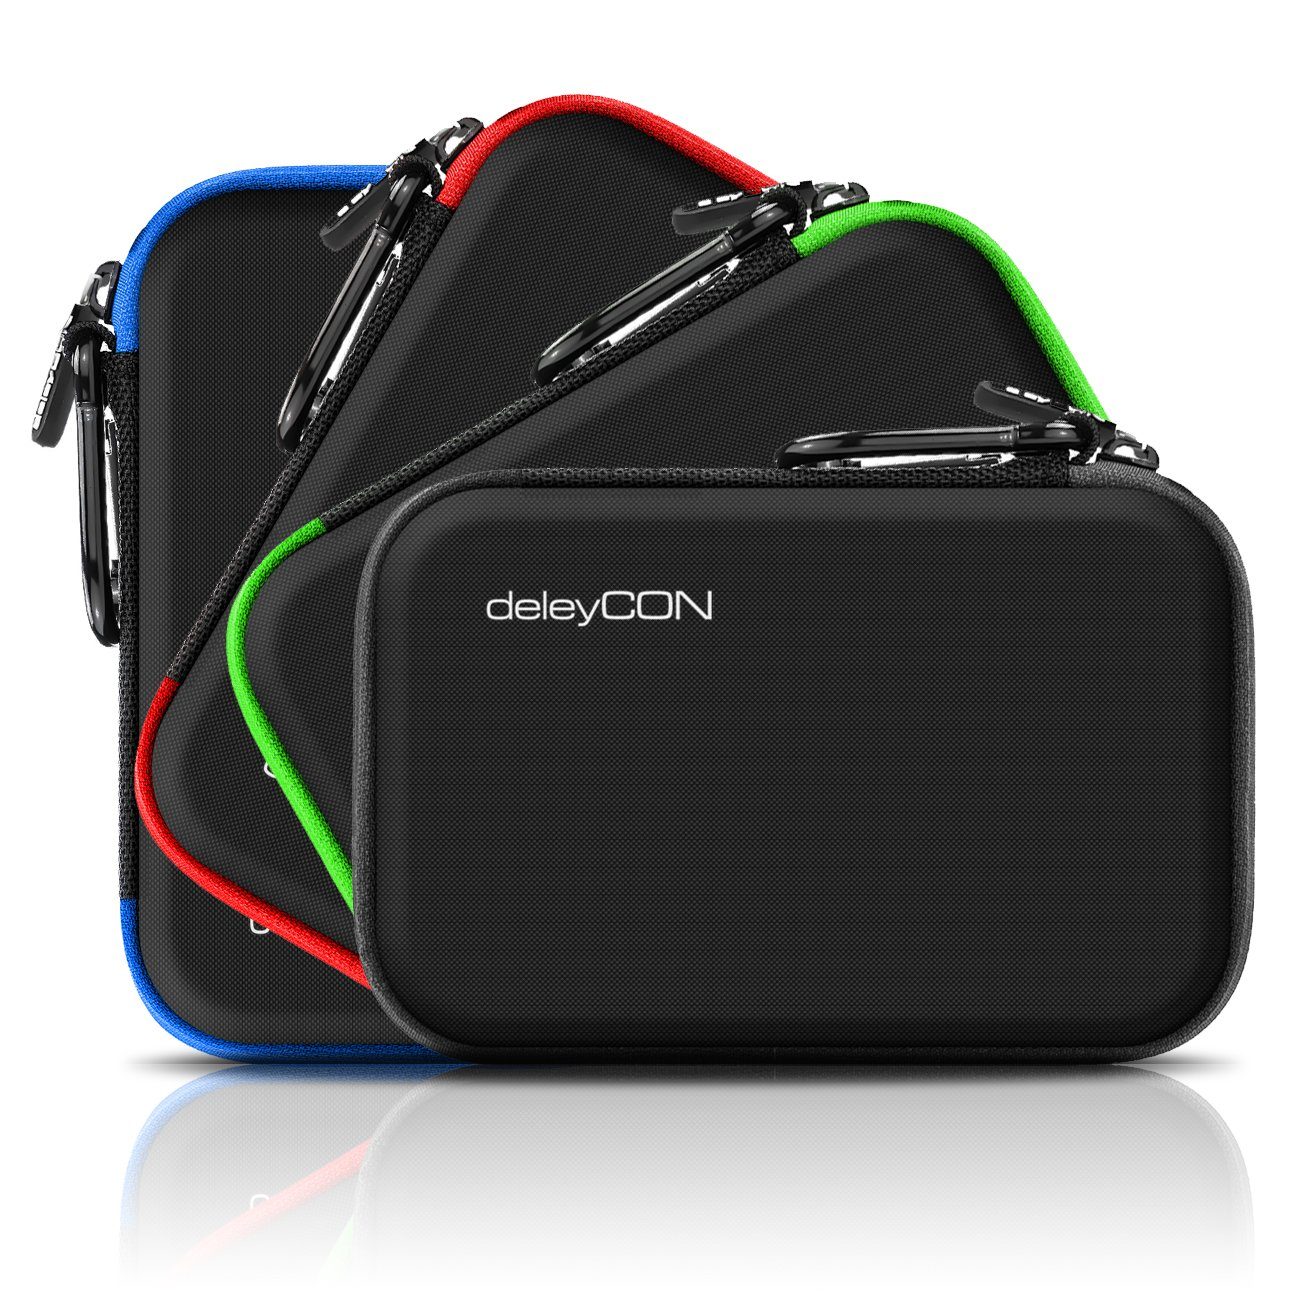 deleyCON Festplattentasche deleyCON Navi Schwarz bis Case Navi Zoll Navigationsgerät 6,2" Tasche